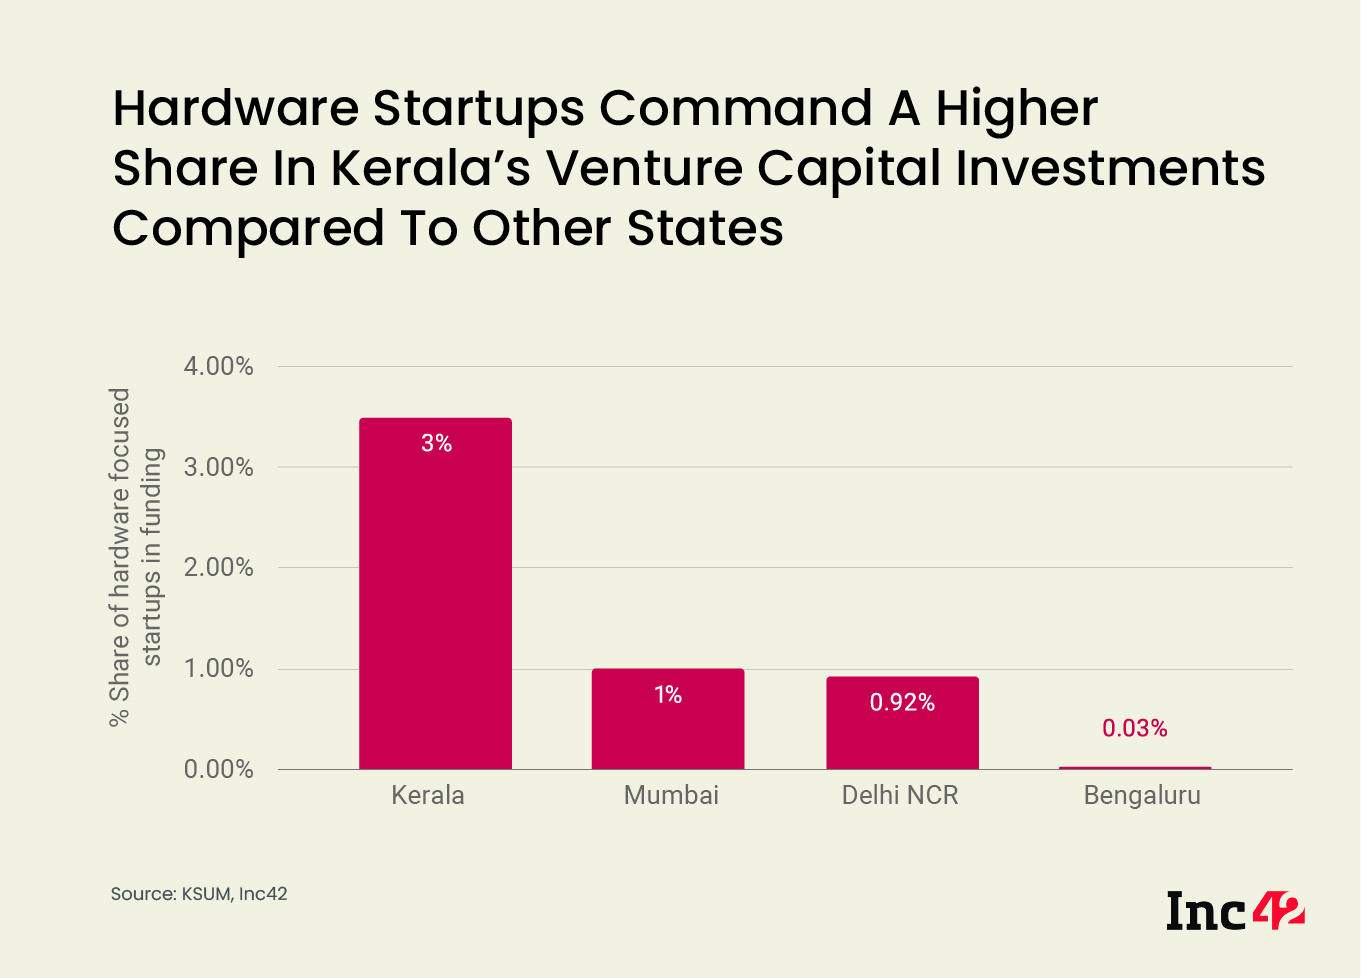 Kerala's Hardware Startups 